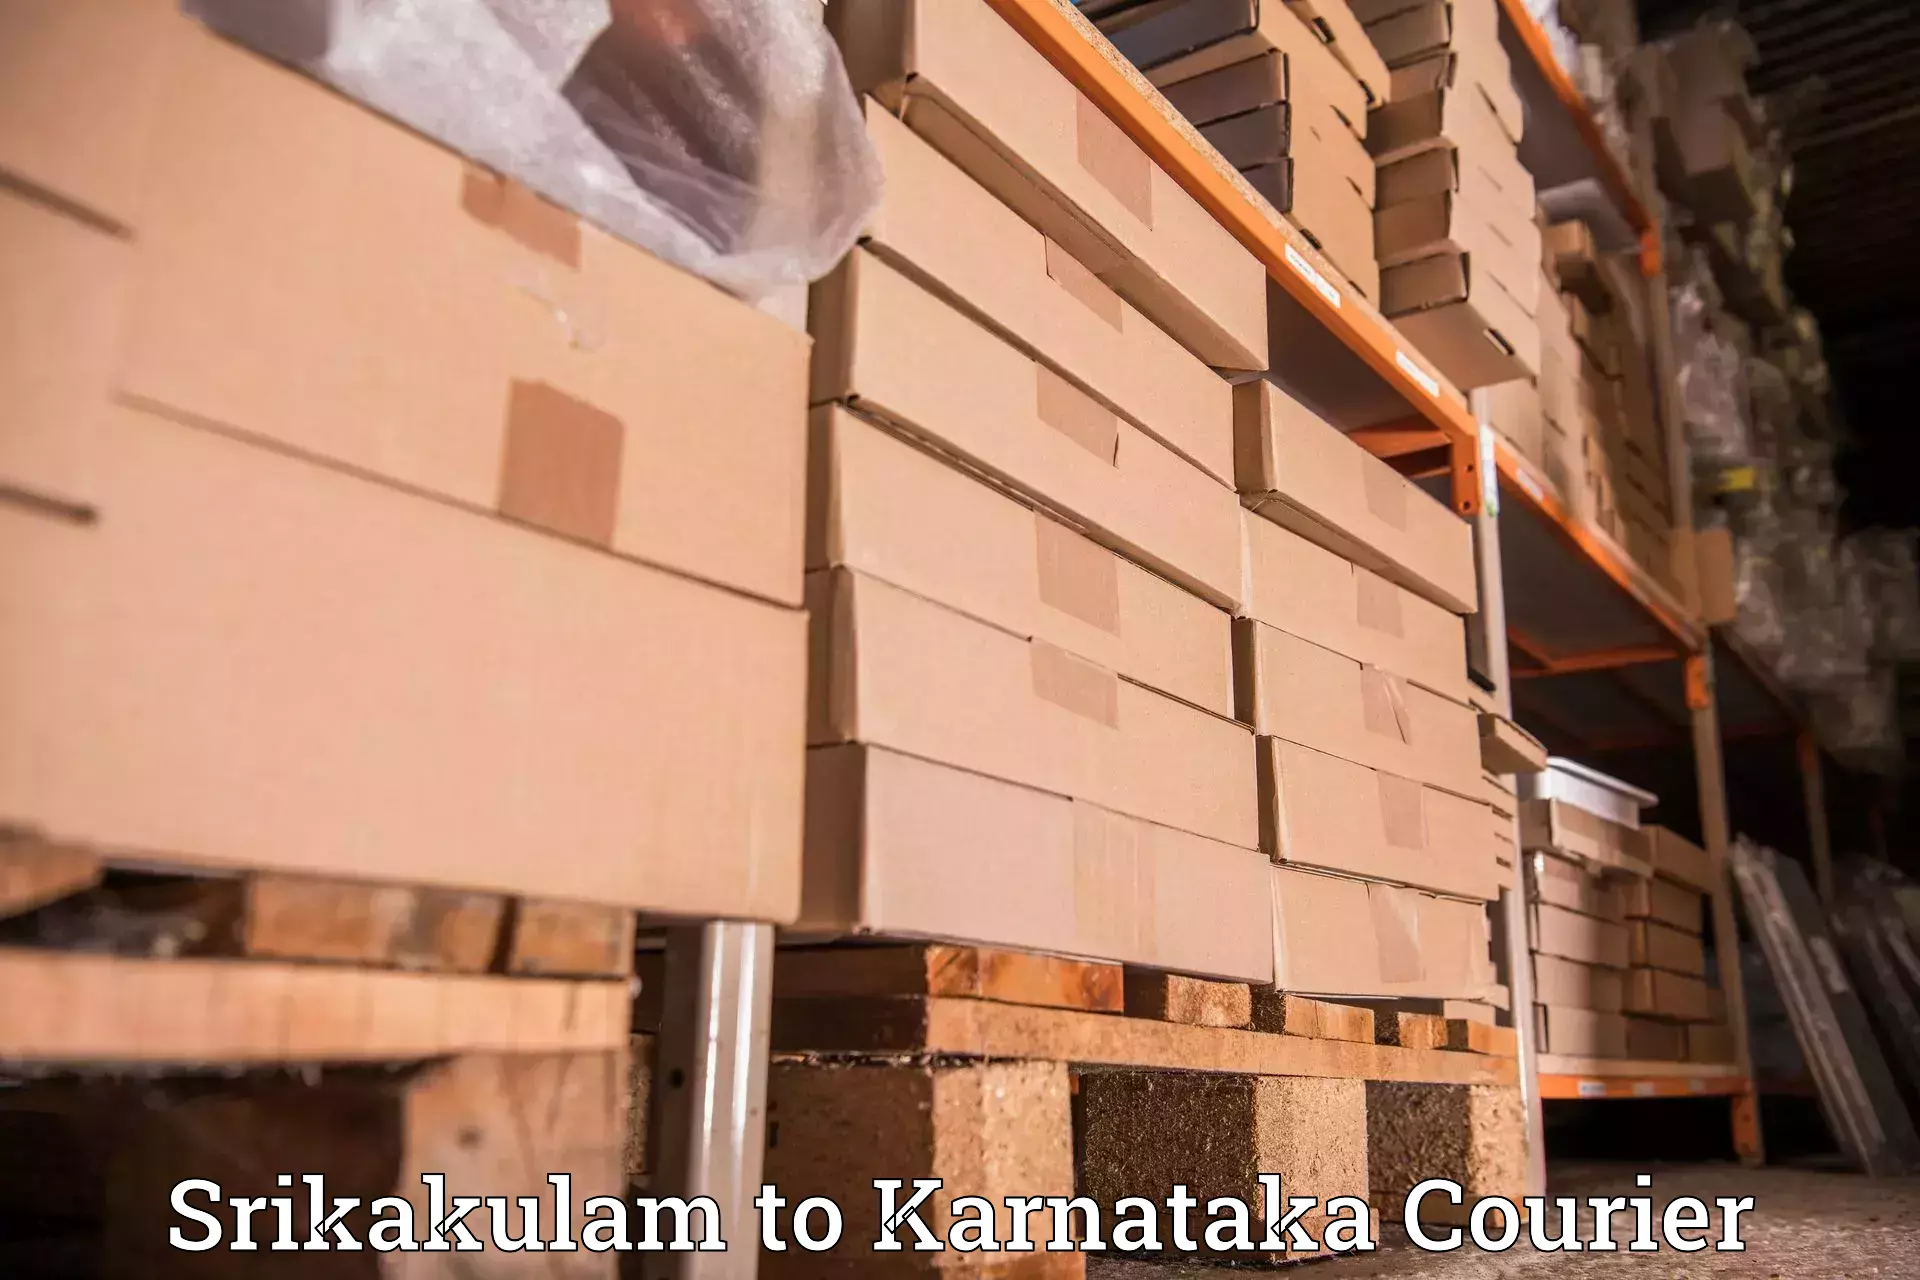 Tech-enabled shipping Srikakulam to Kanjarakatte